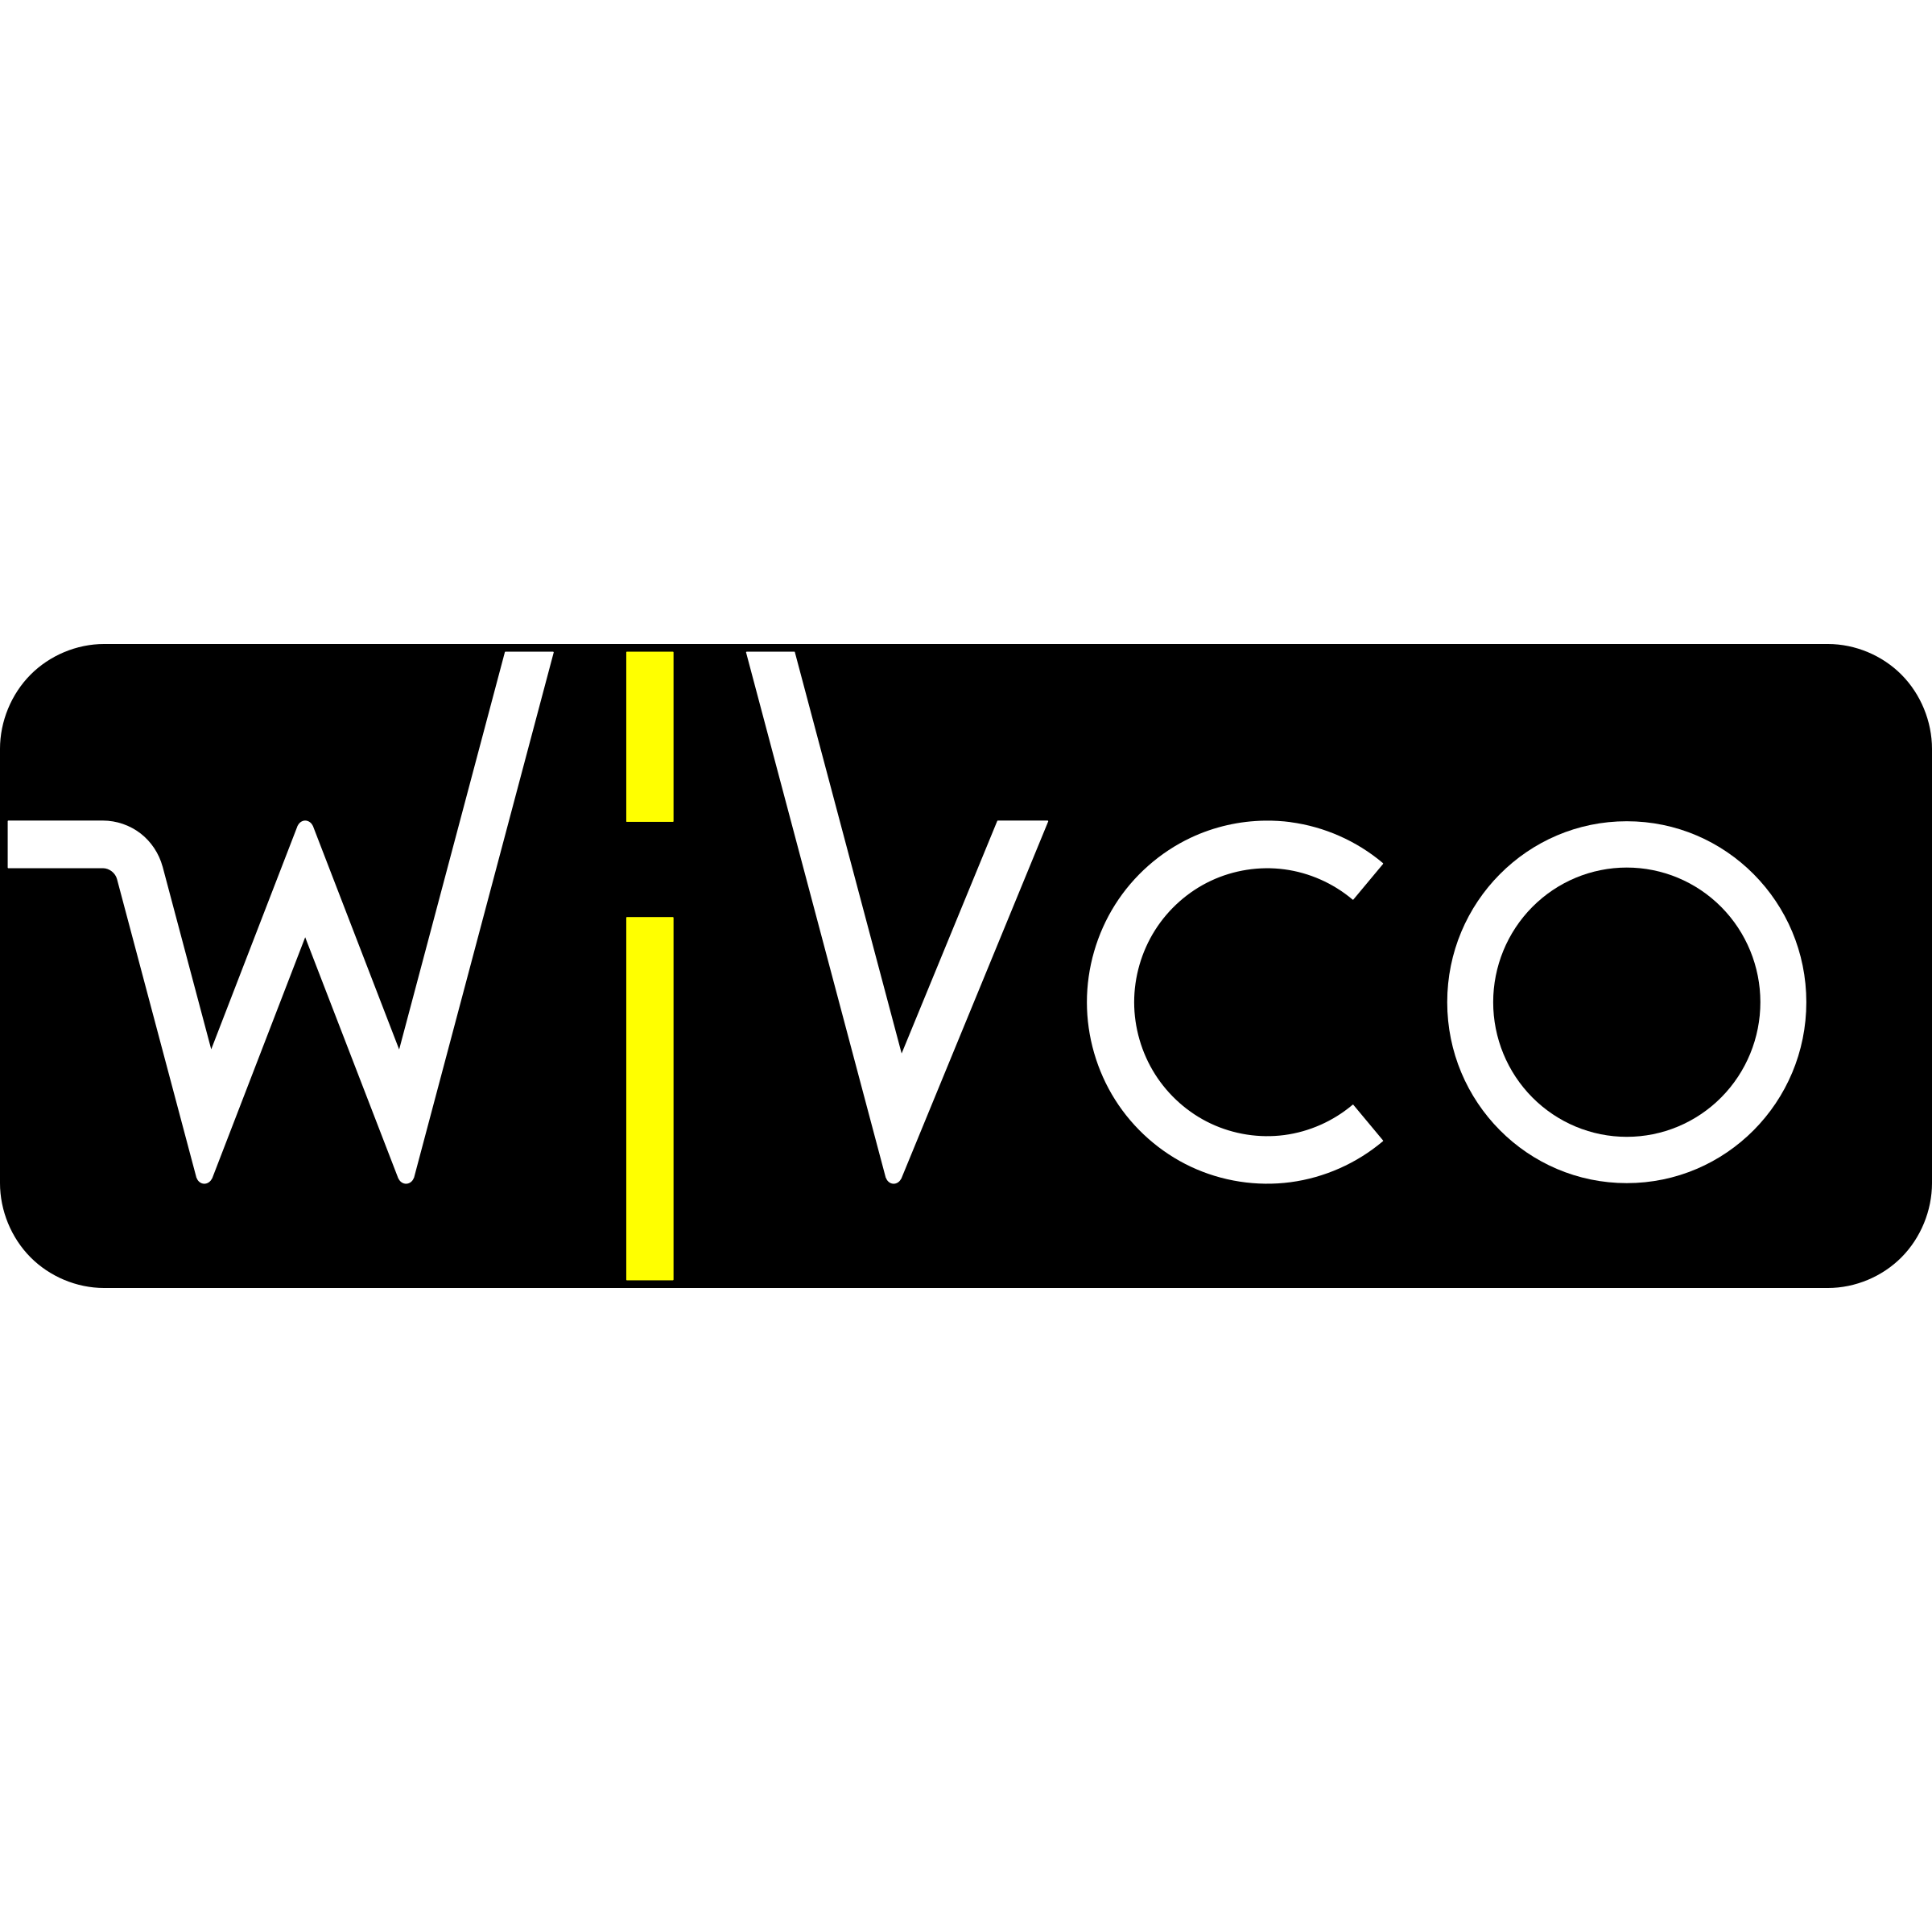 Wivco Design